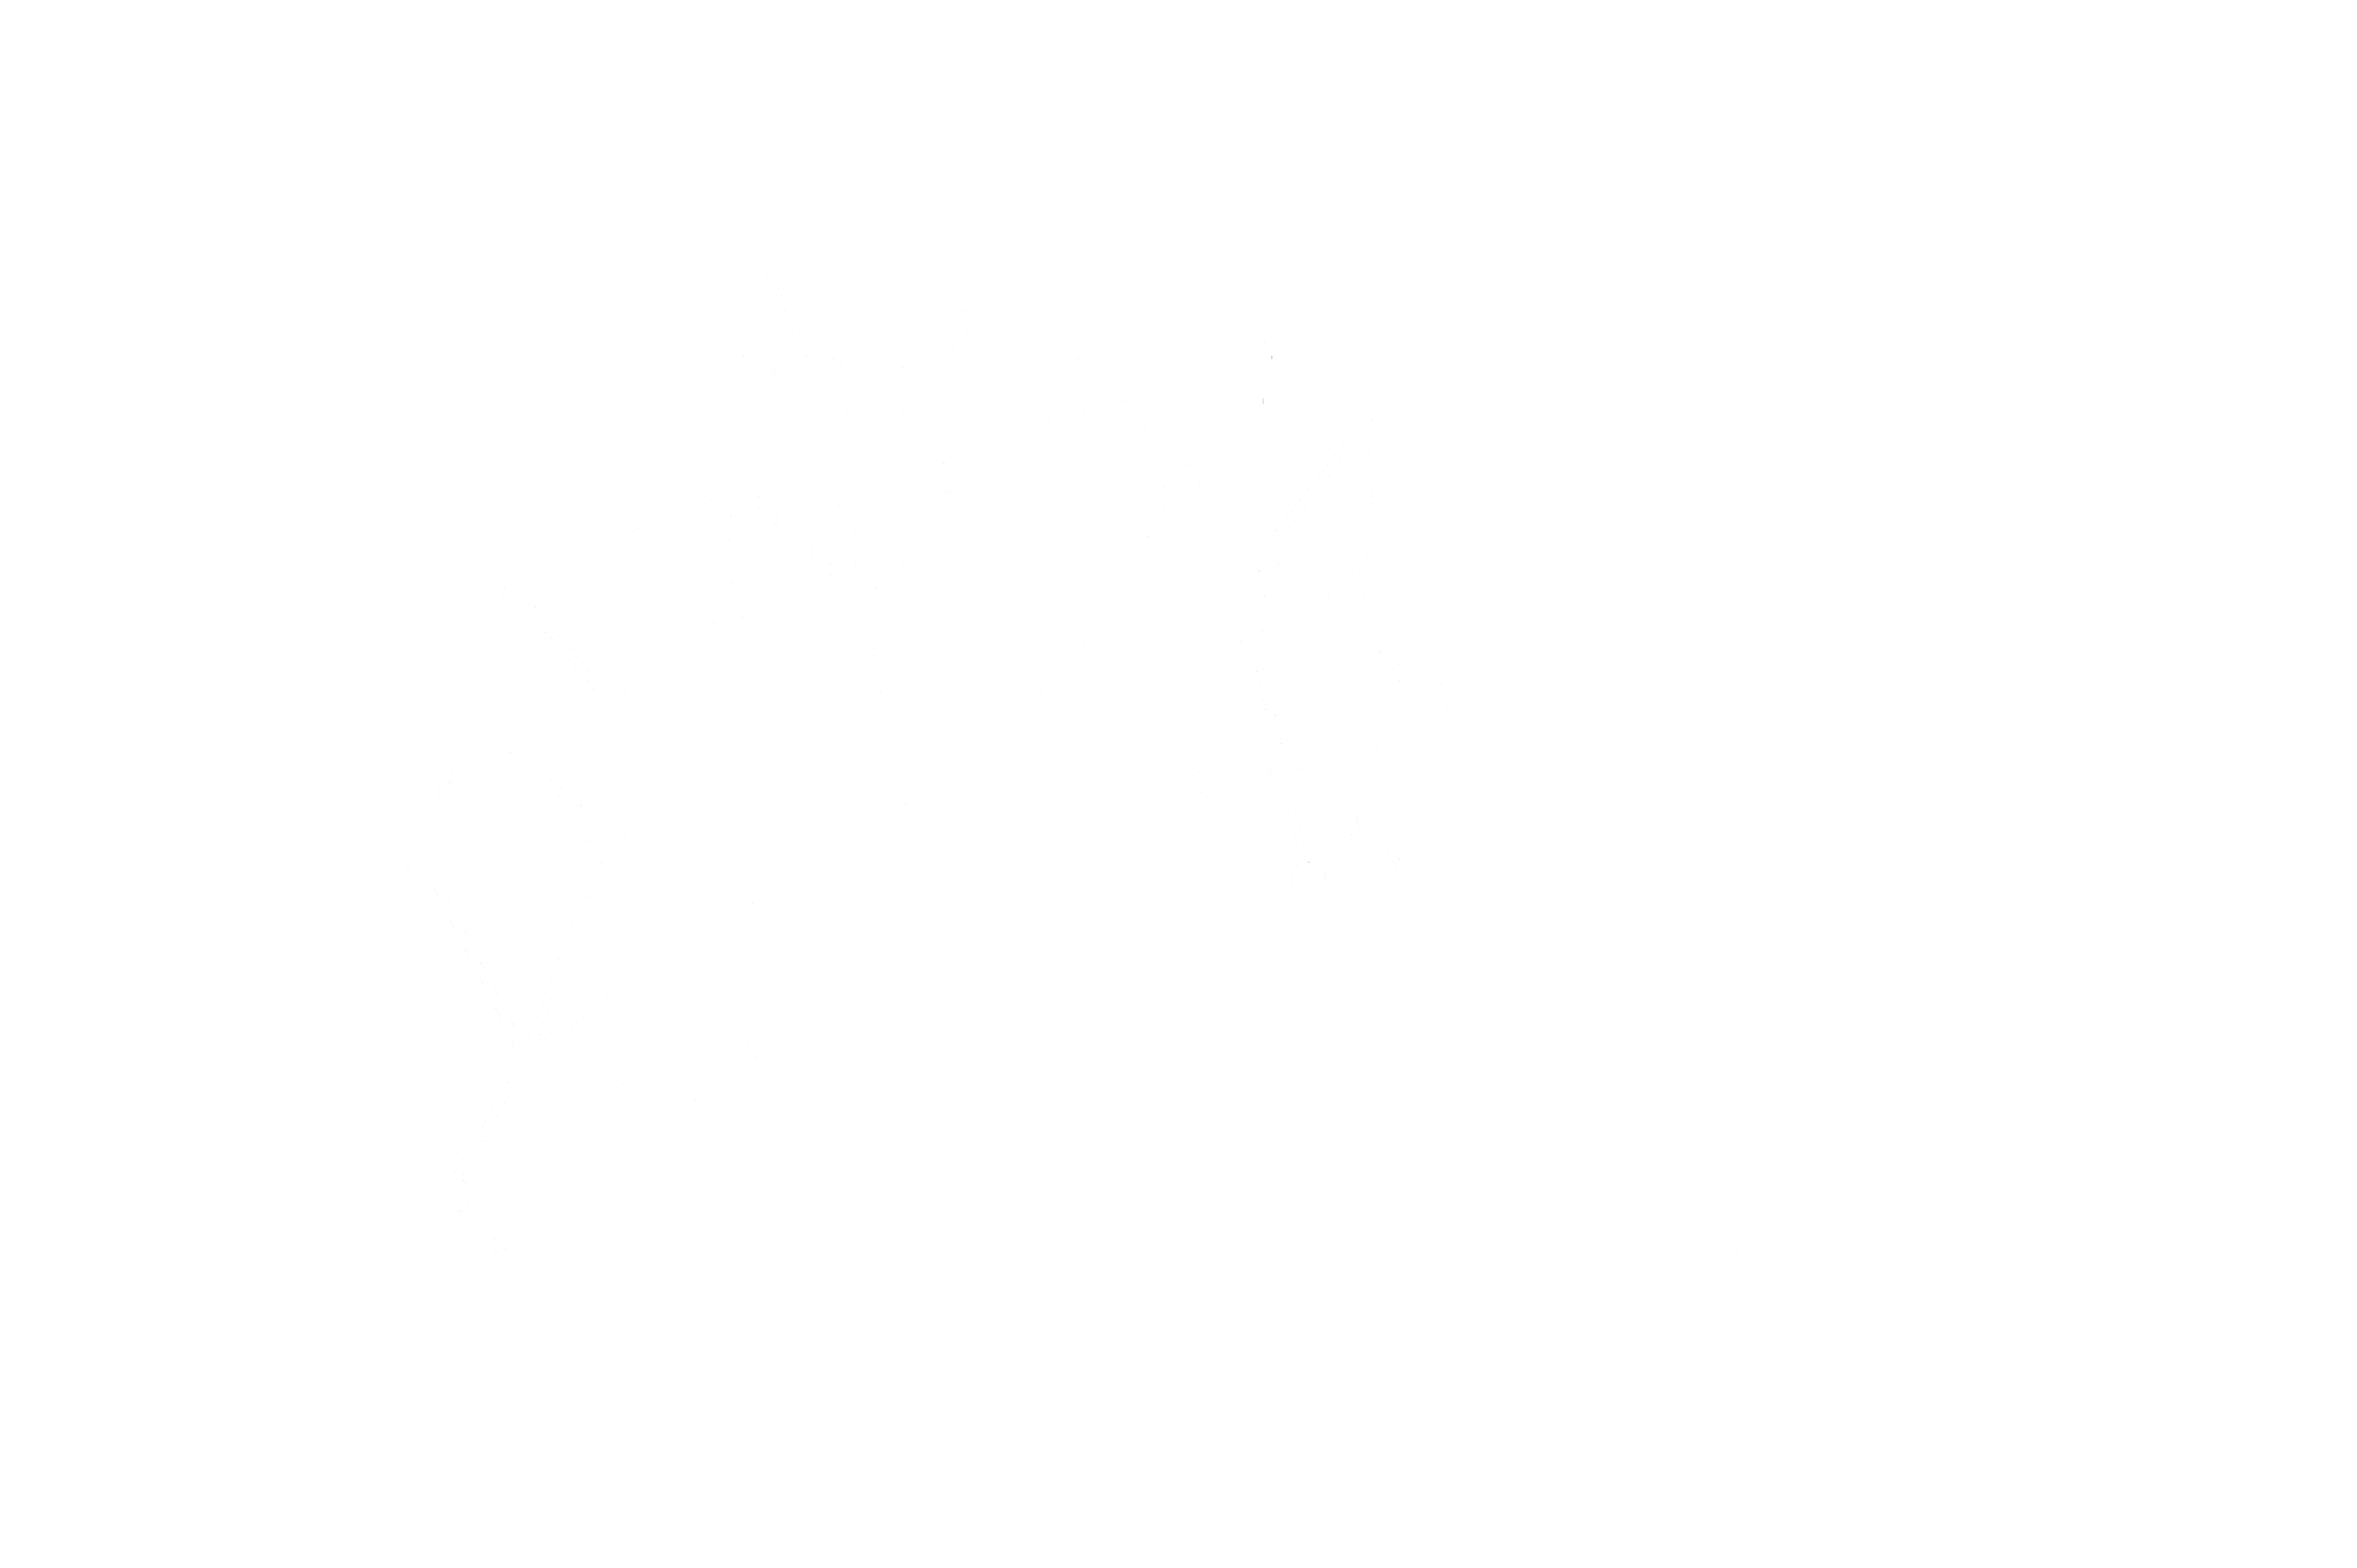 IOTech